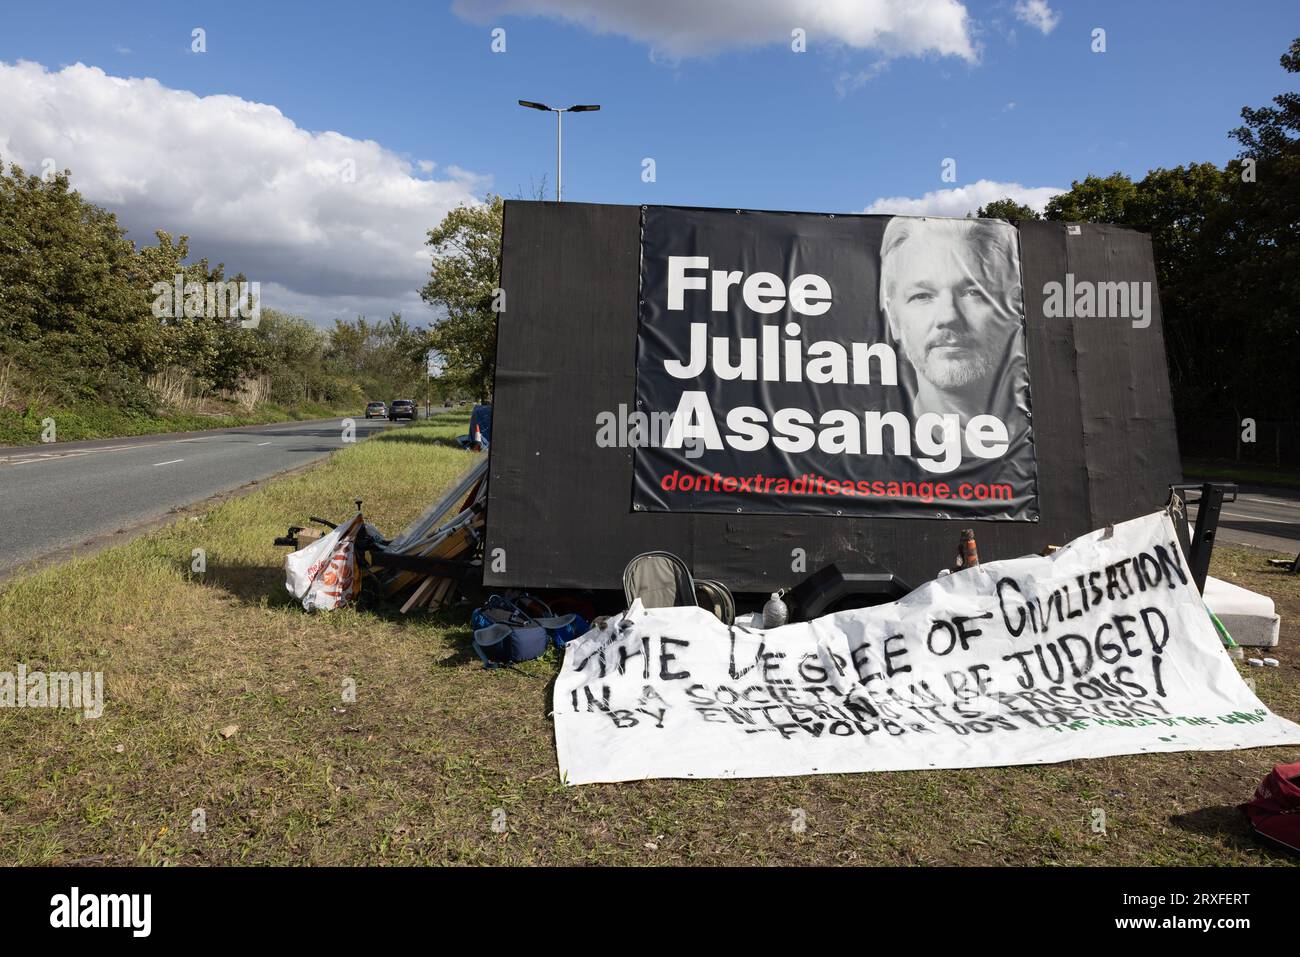 Julian Assange Kampagne ProtestFahrradtour vor der HMP Belmarsh London - nicht ausliefern Assange Kampagne Halten Sie eine Massenproteste Fahrradtour durch die Stadt Stockfoto